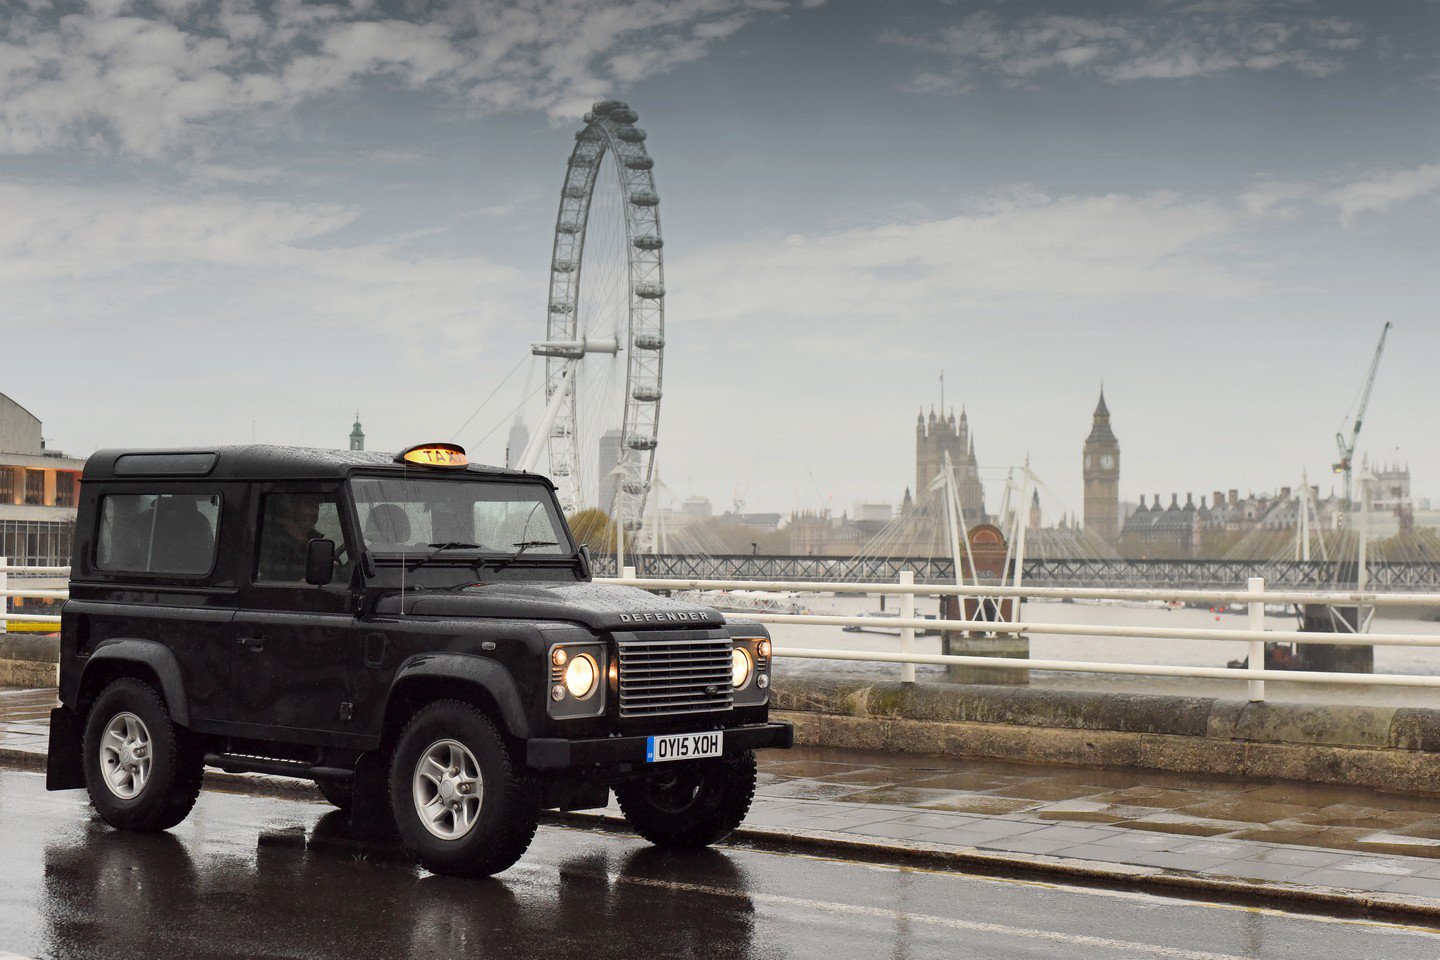 Londýn se loučí s legendárním Land Roverem Defender